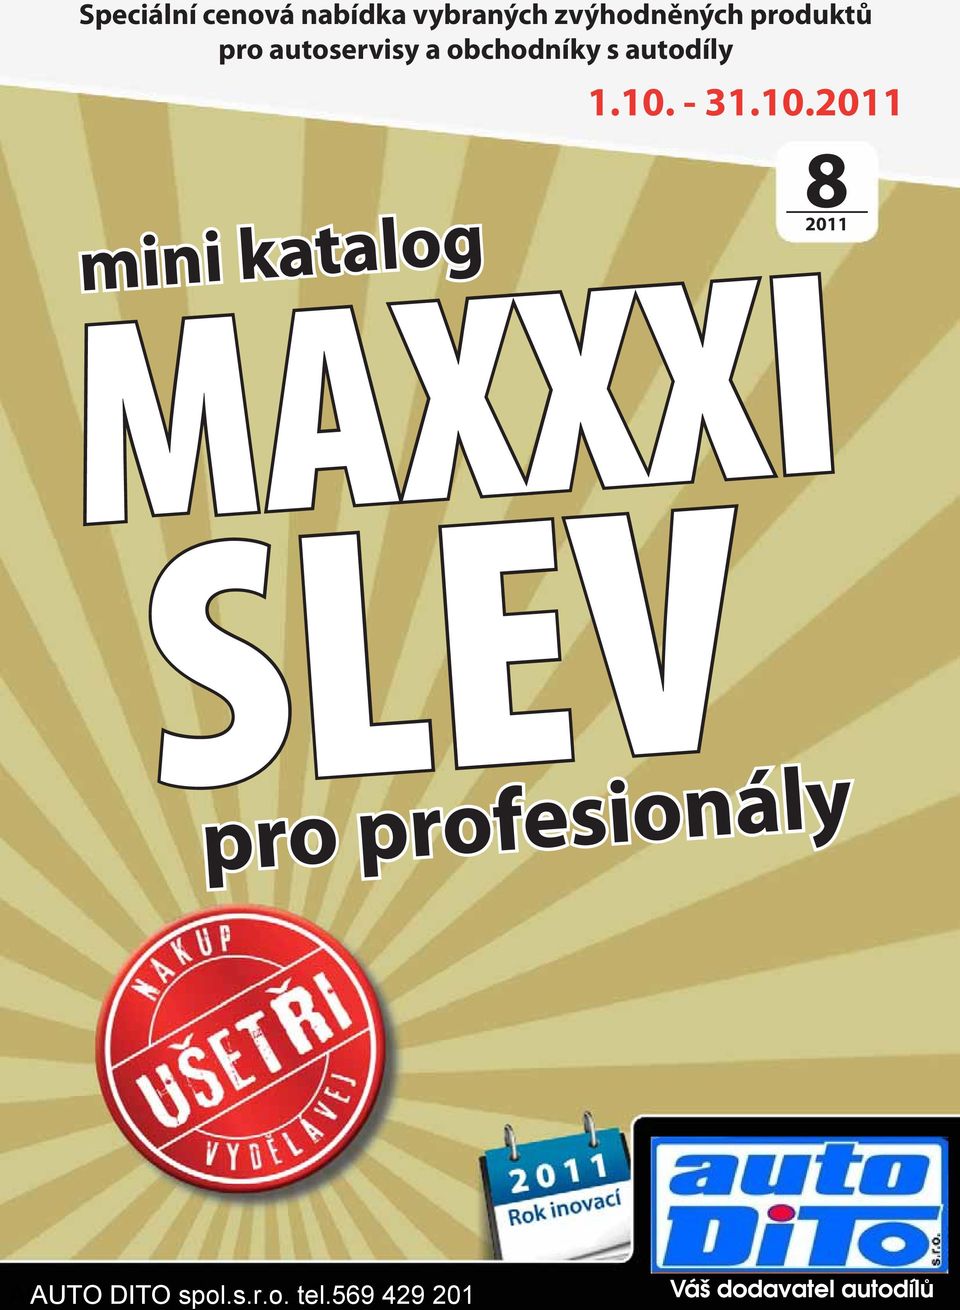 10. - 31.10.2011 mini katalog MAXXXI SLEV 82011 pro